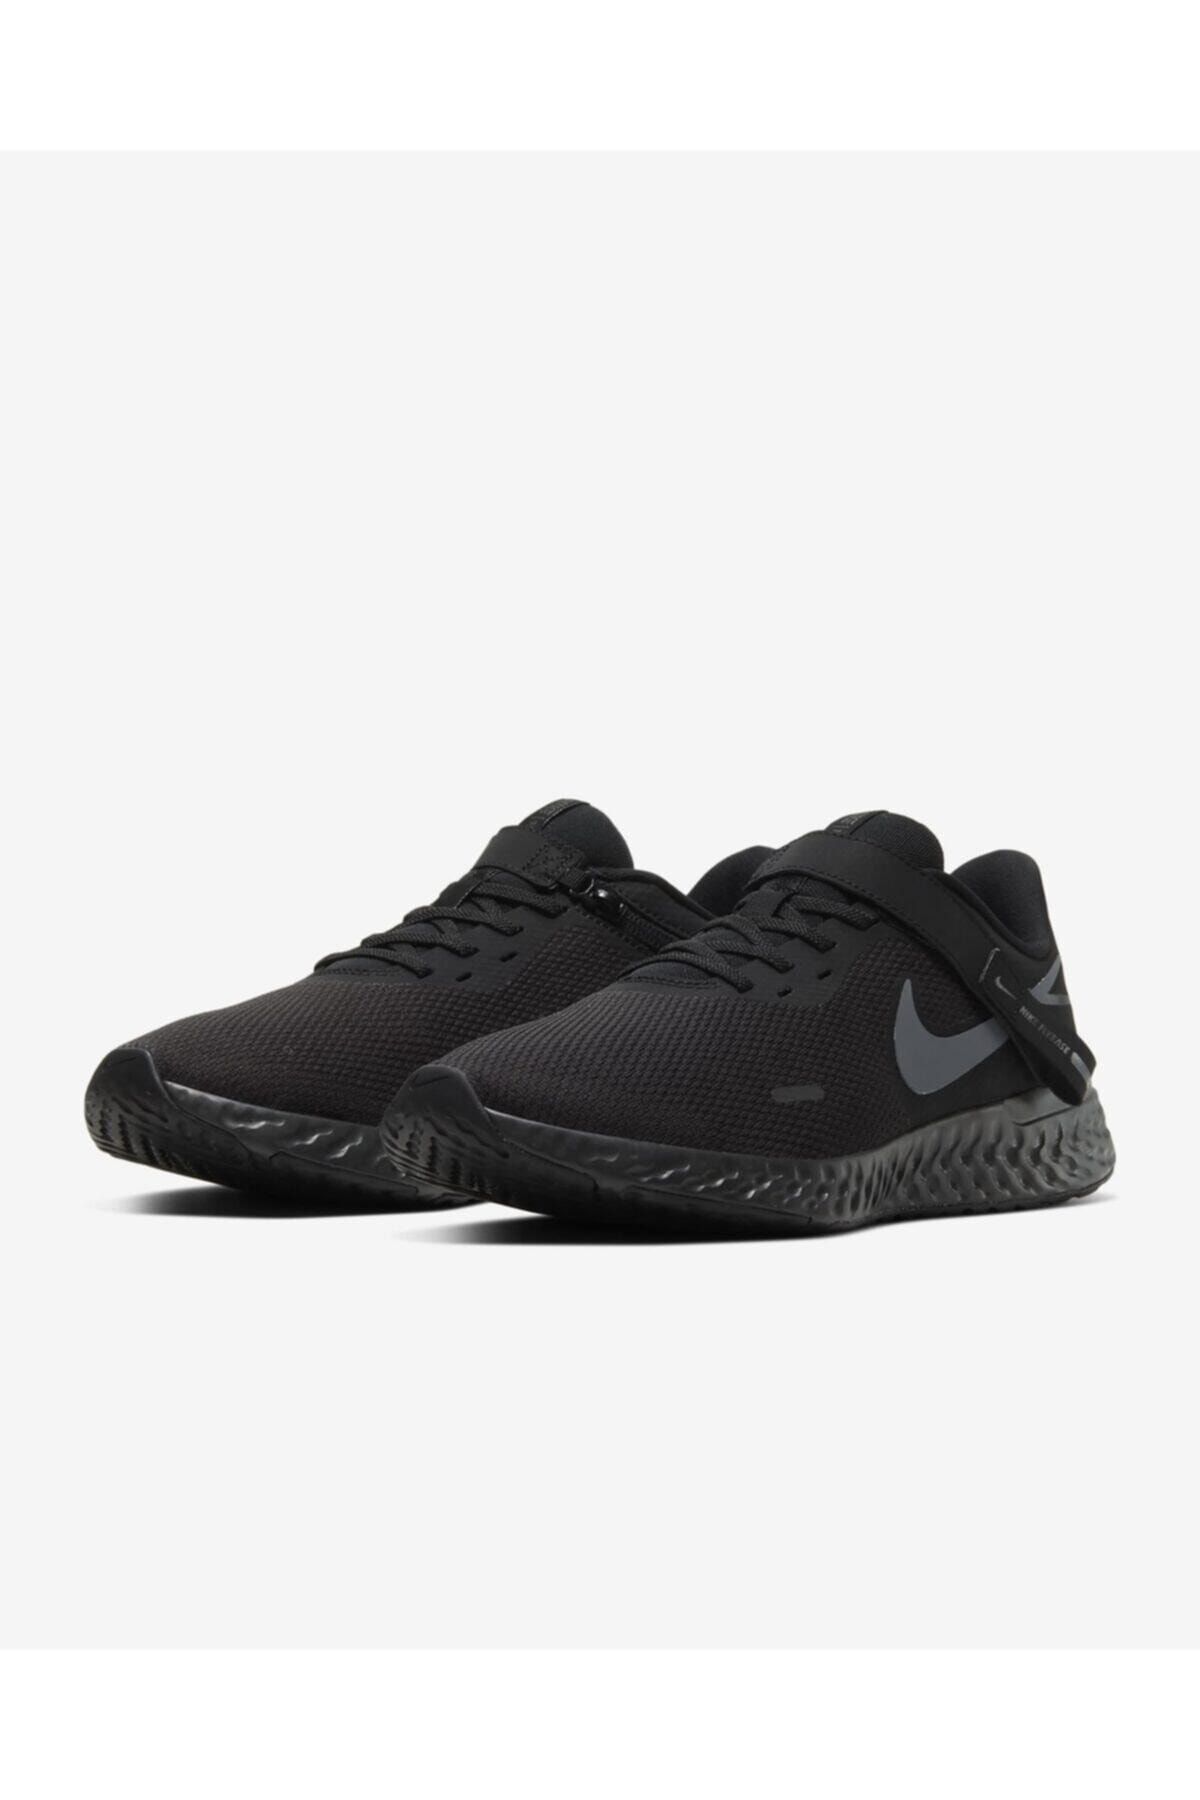 Nike Revolution Flyease 5 Zip Fermuarlı Yürüyüş Koşu Ayakkabısı